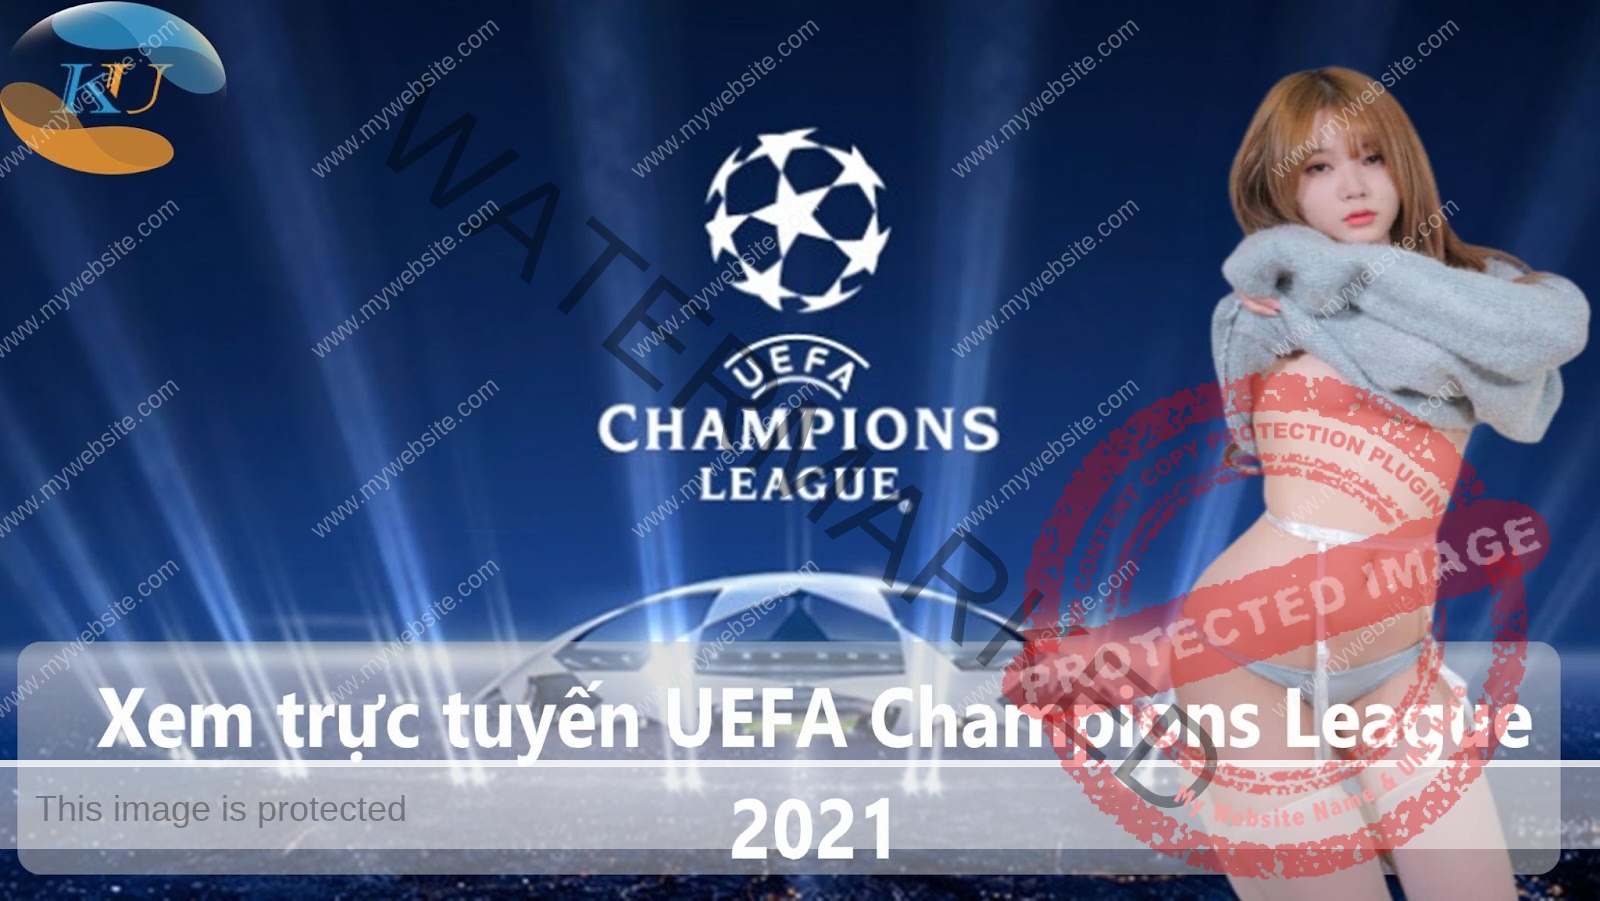 [Xem trực tuyến UEFA Champions League 2021] Hãy đến đây và xem!